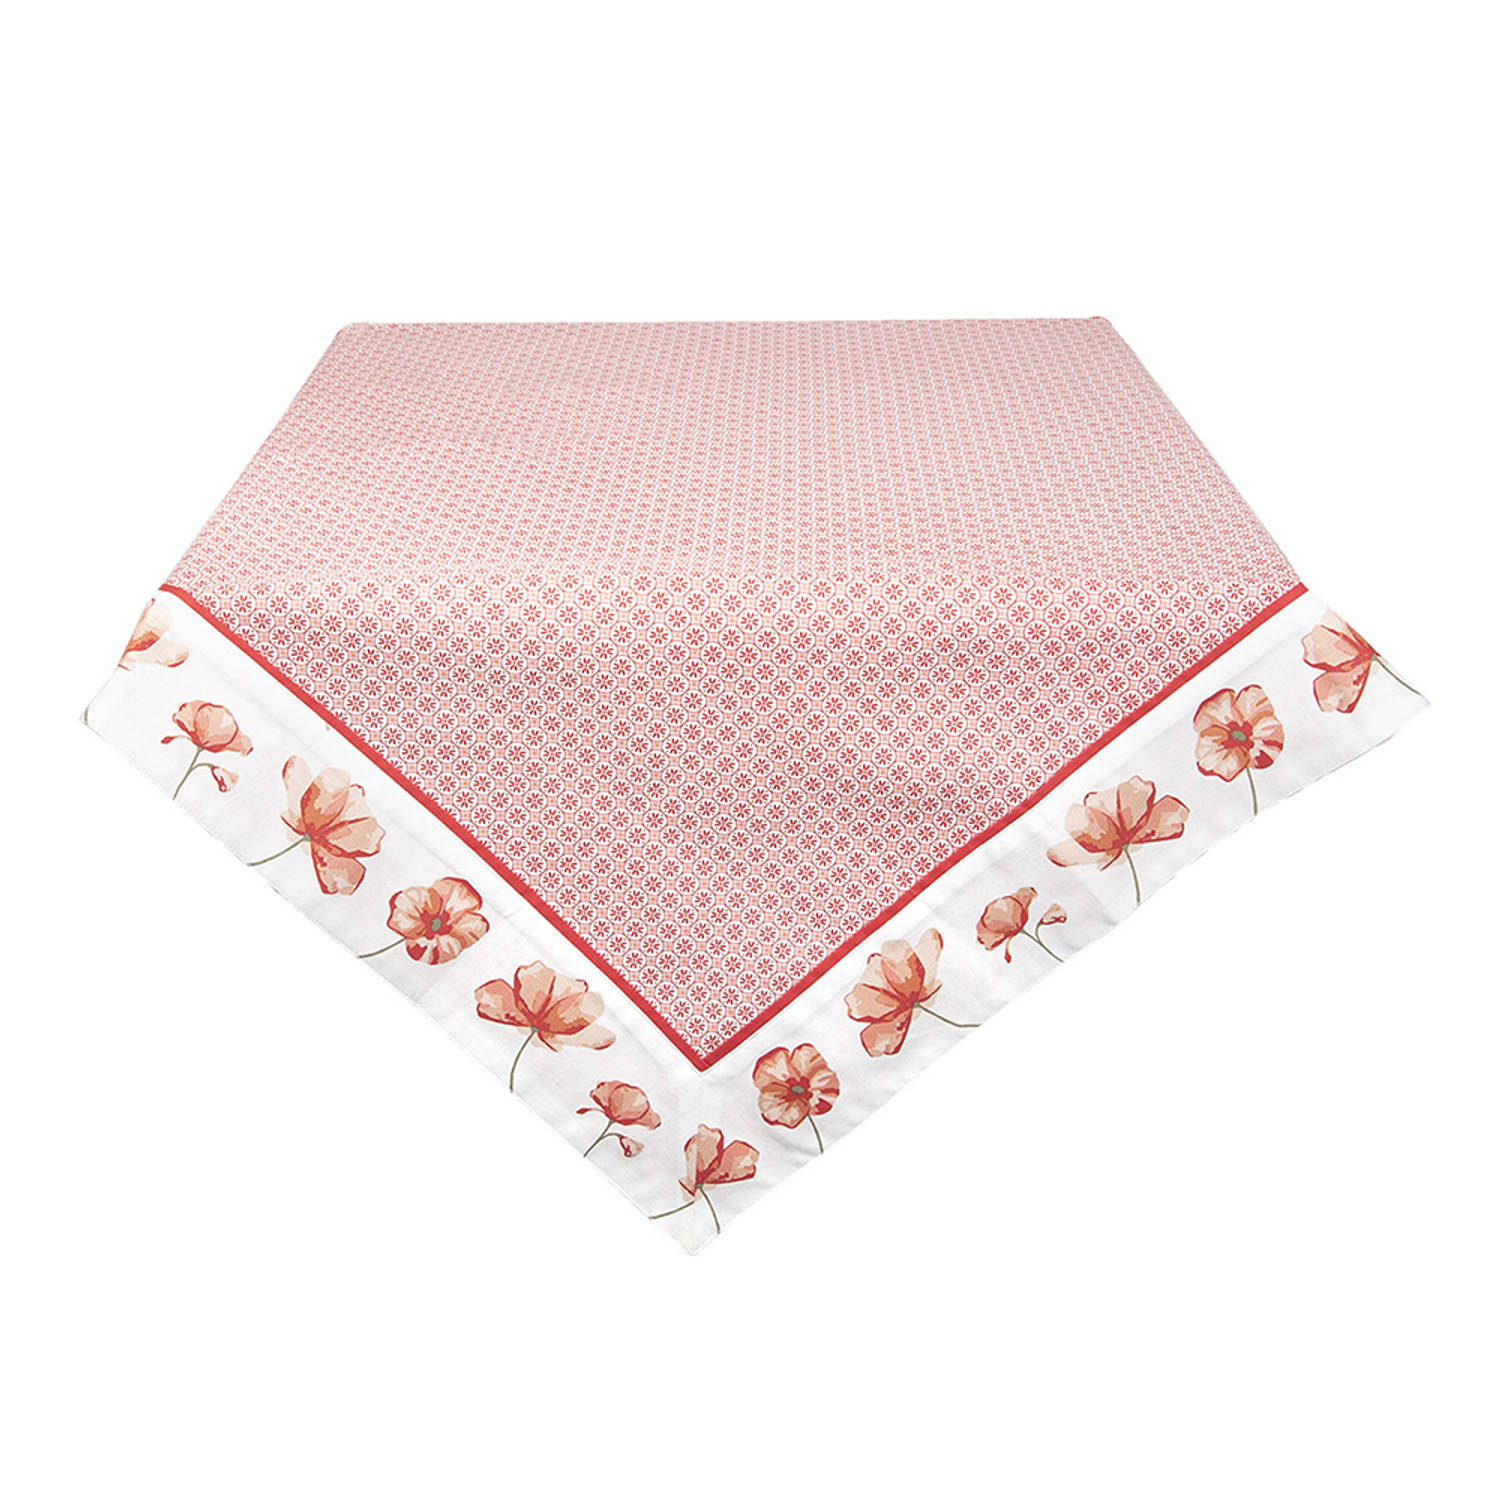 HAES DECO - Vierkant Tafellaken - formaat 100x100 cm - kleuren Rood / Wit - van Katoen - Collectie: Poppy Flower - Tafellaken, Tafellinnen, Tafeltextiel